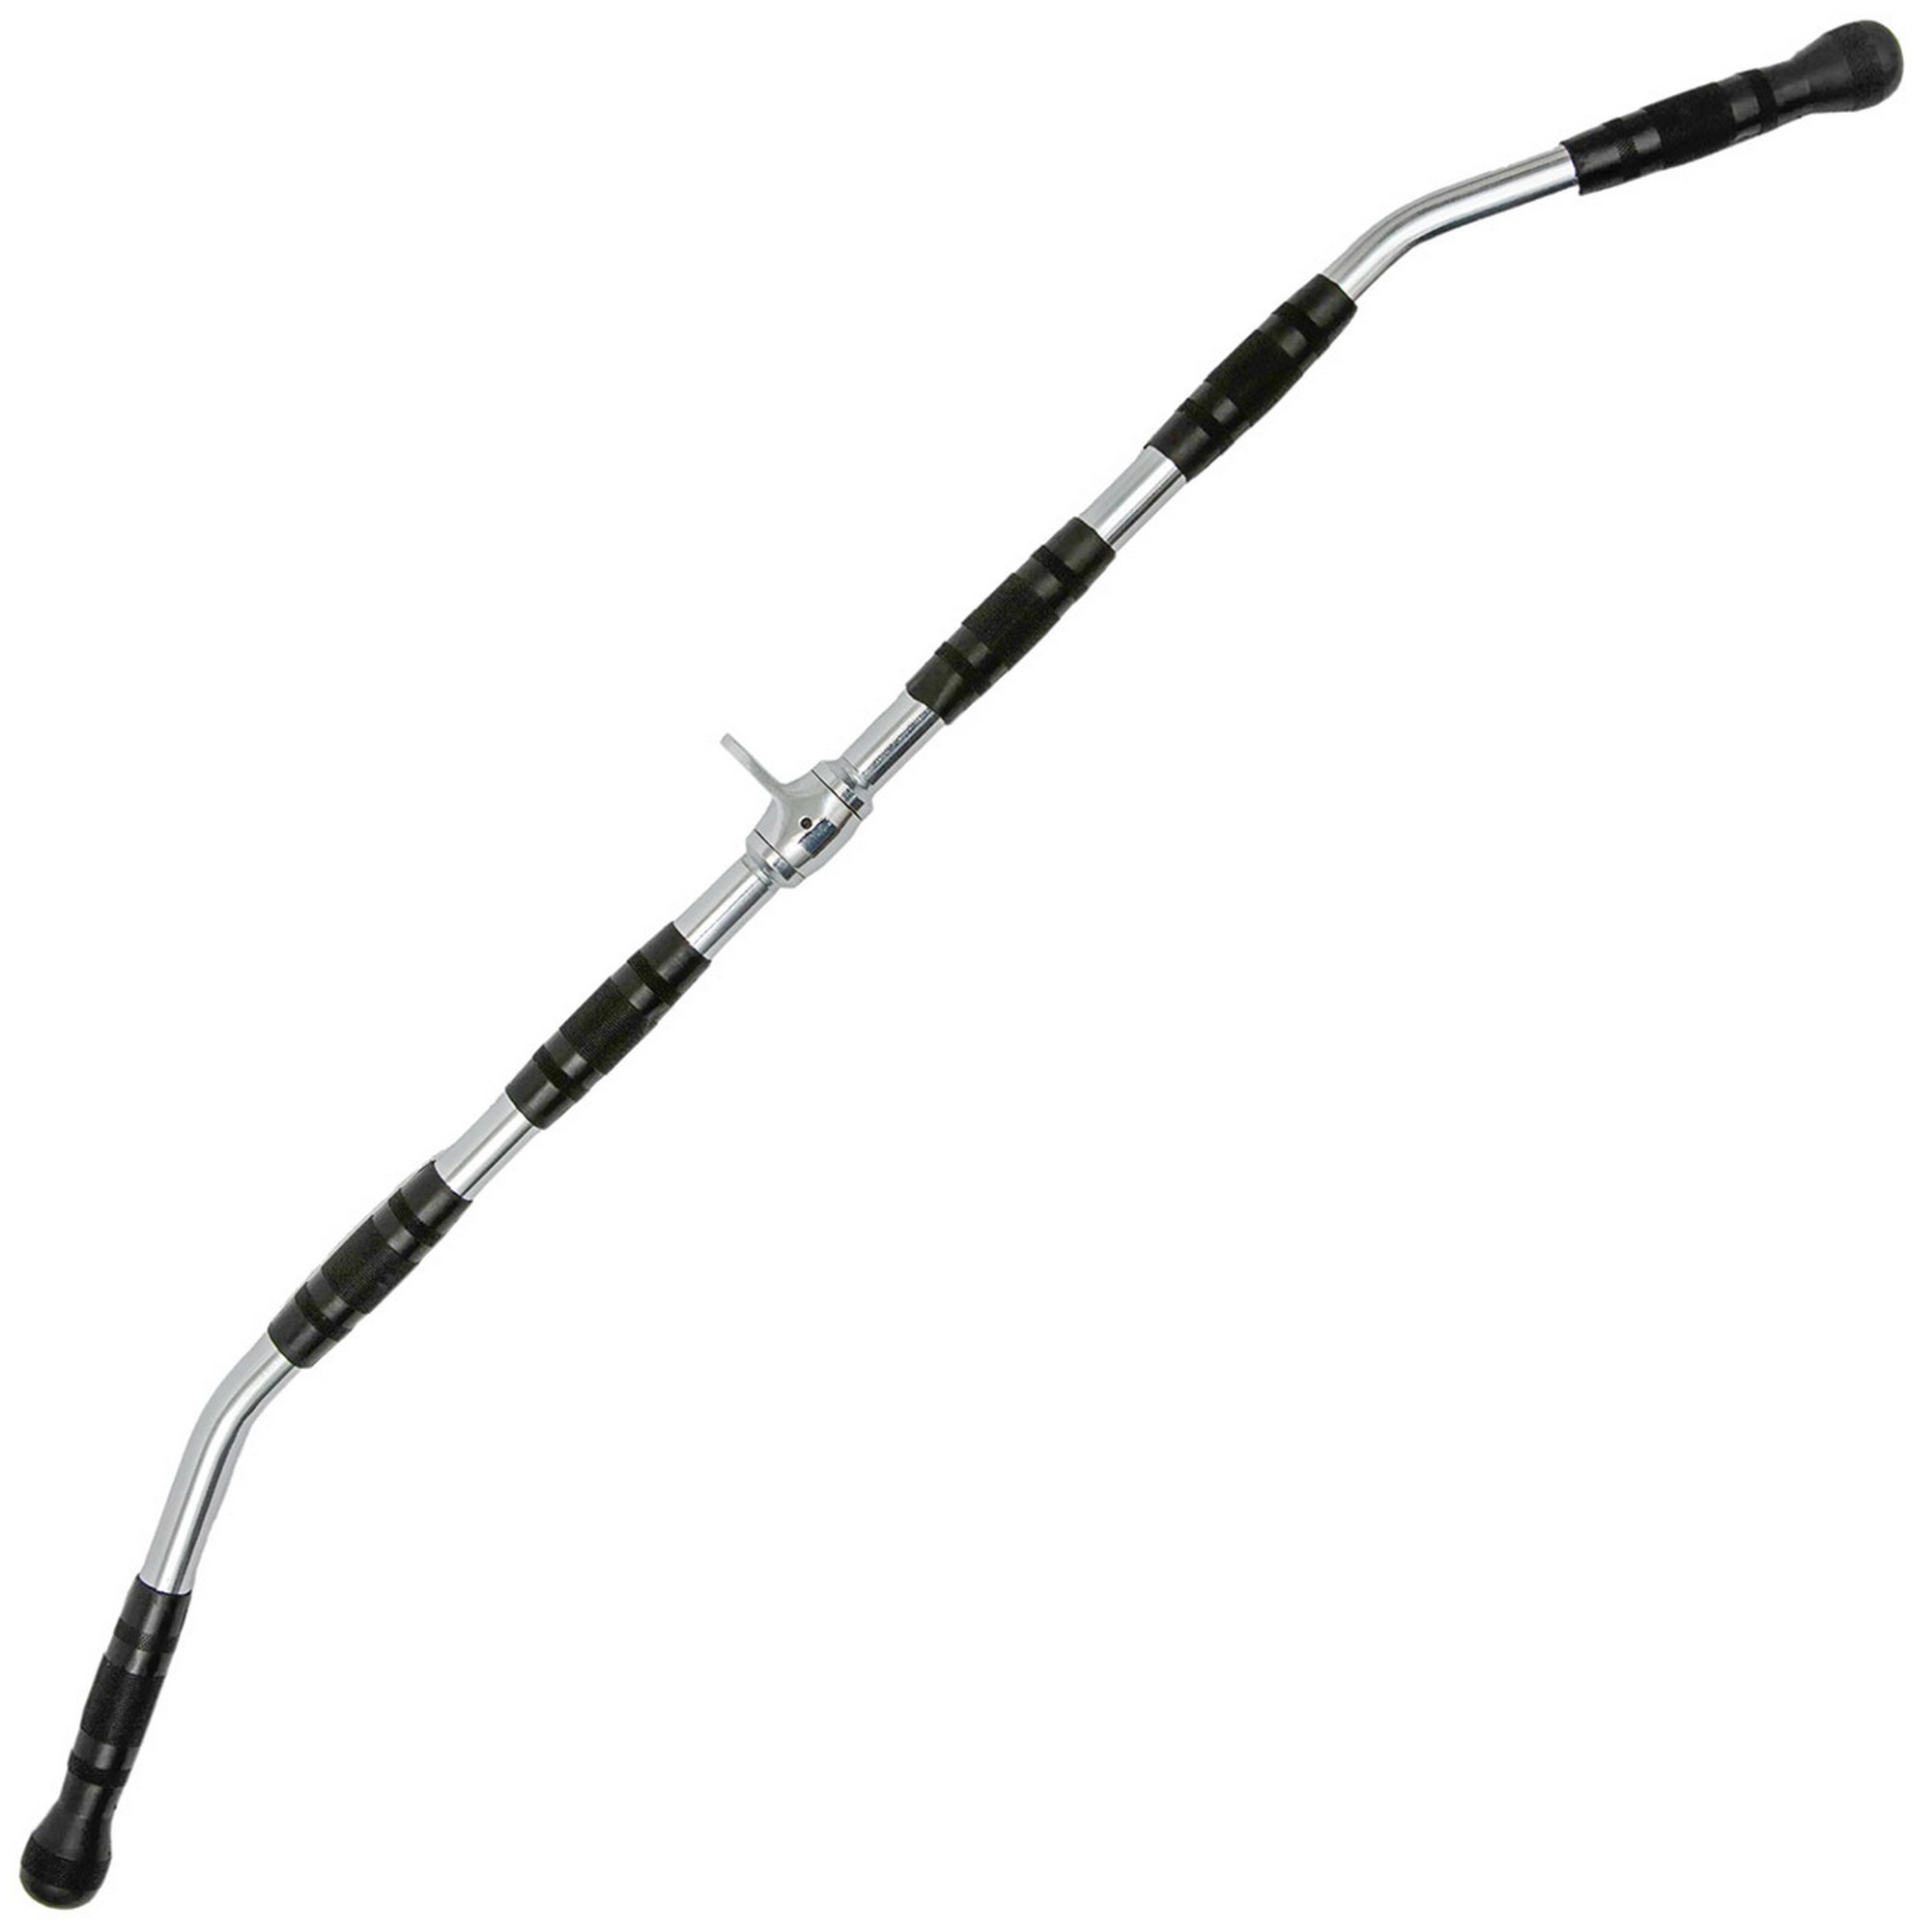 Блочная ручка для тяги за спины 91 см Sportex E42095 2000_2000